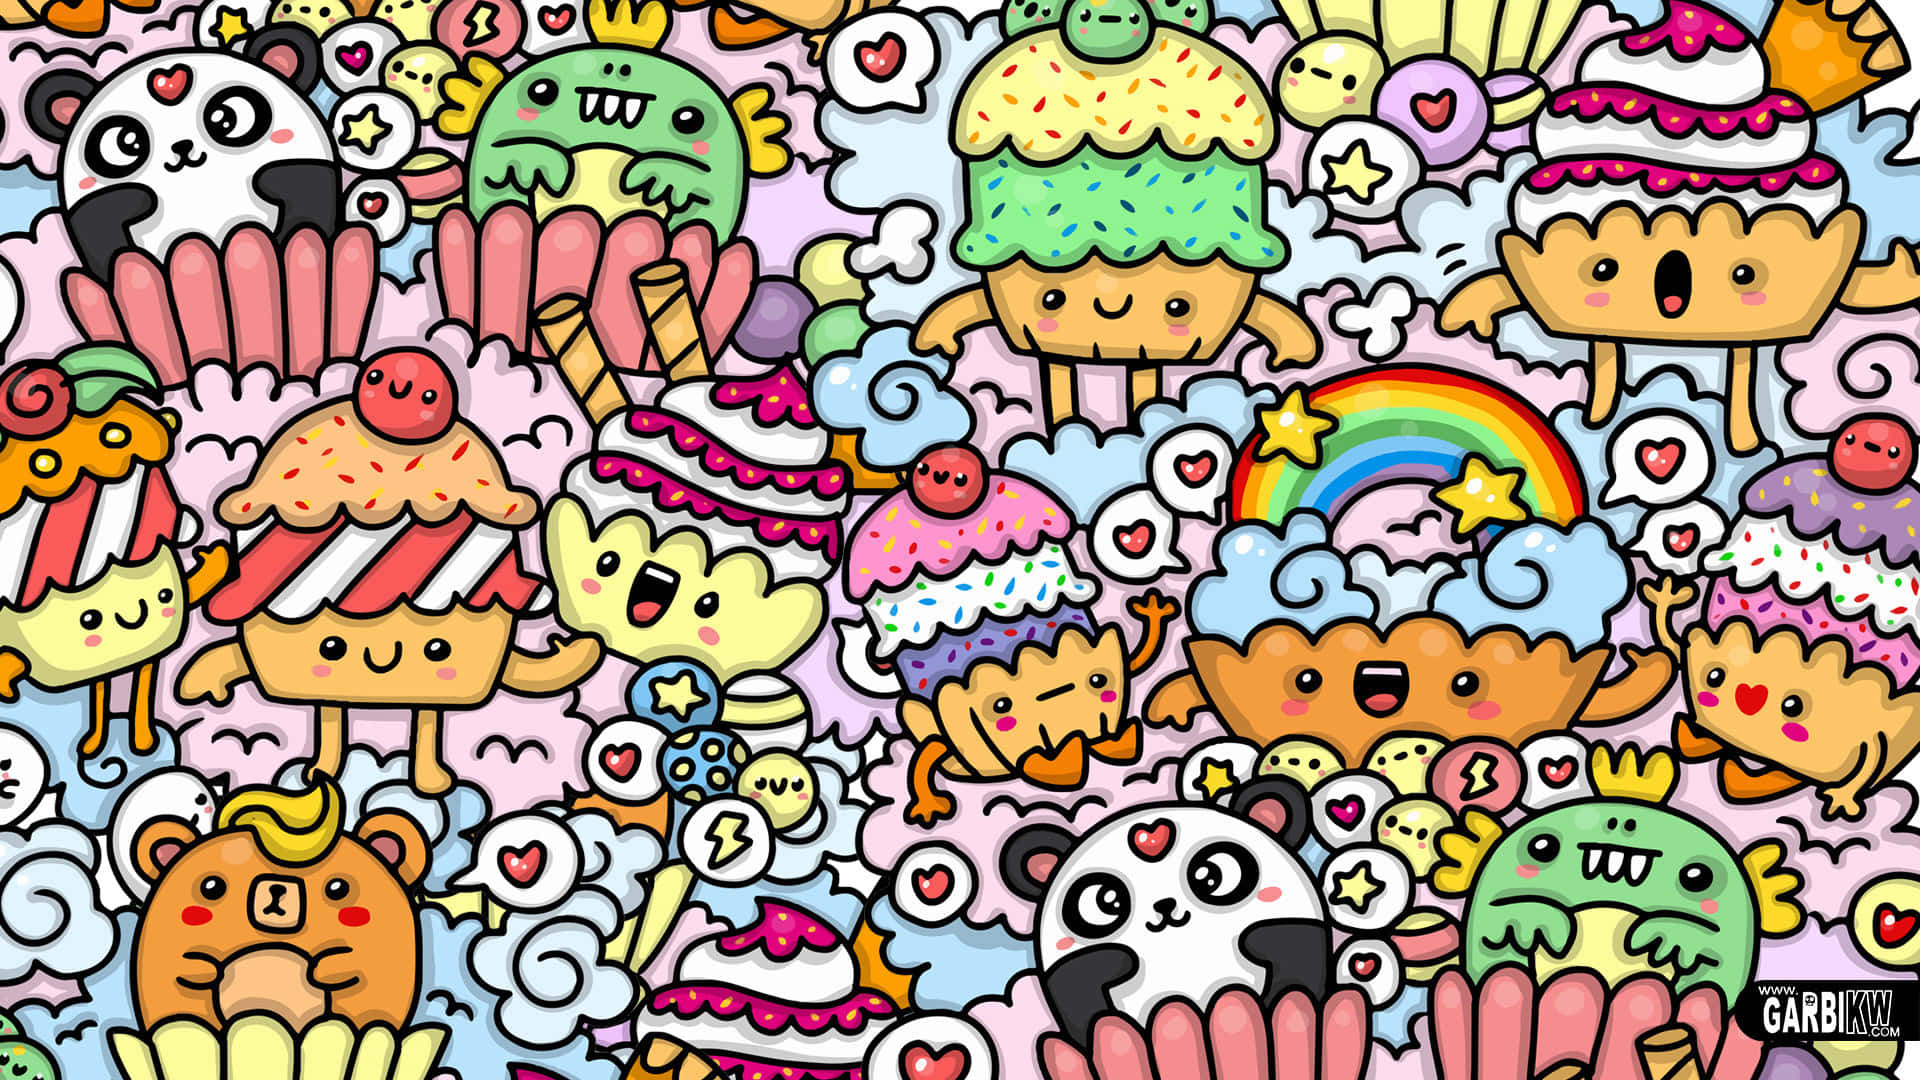 Imagende Arte De Cupcakes Doodle